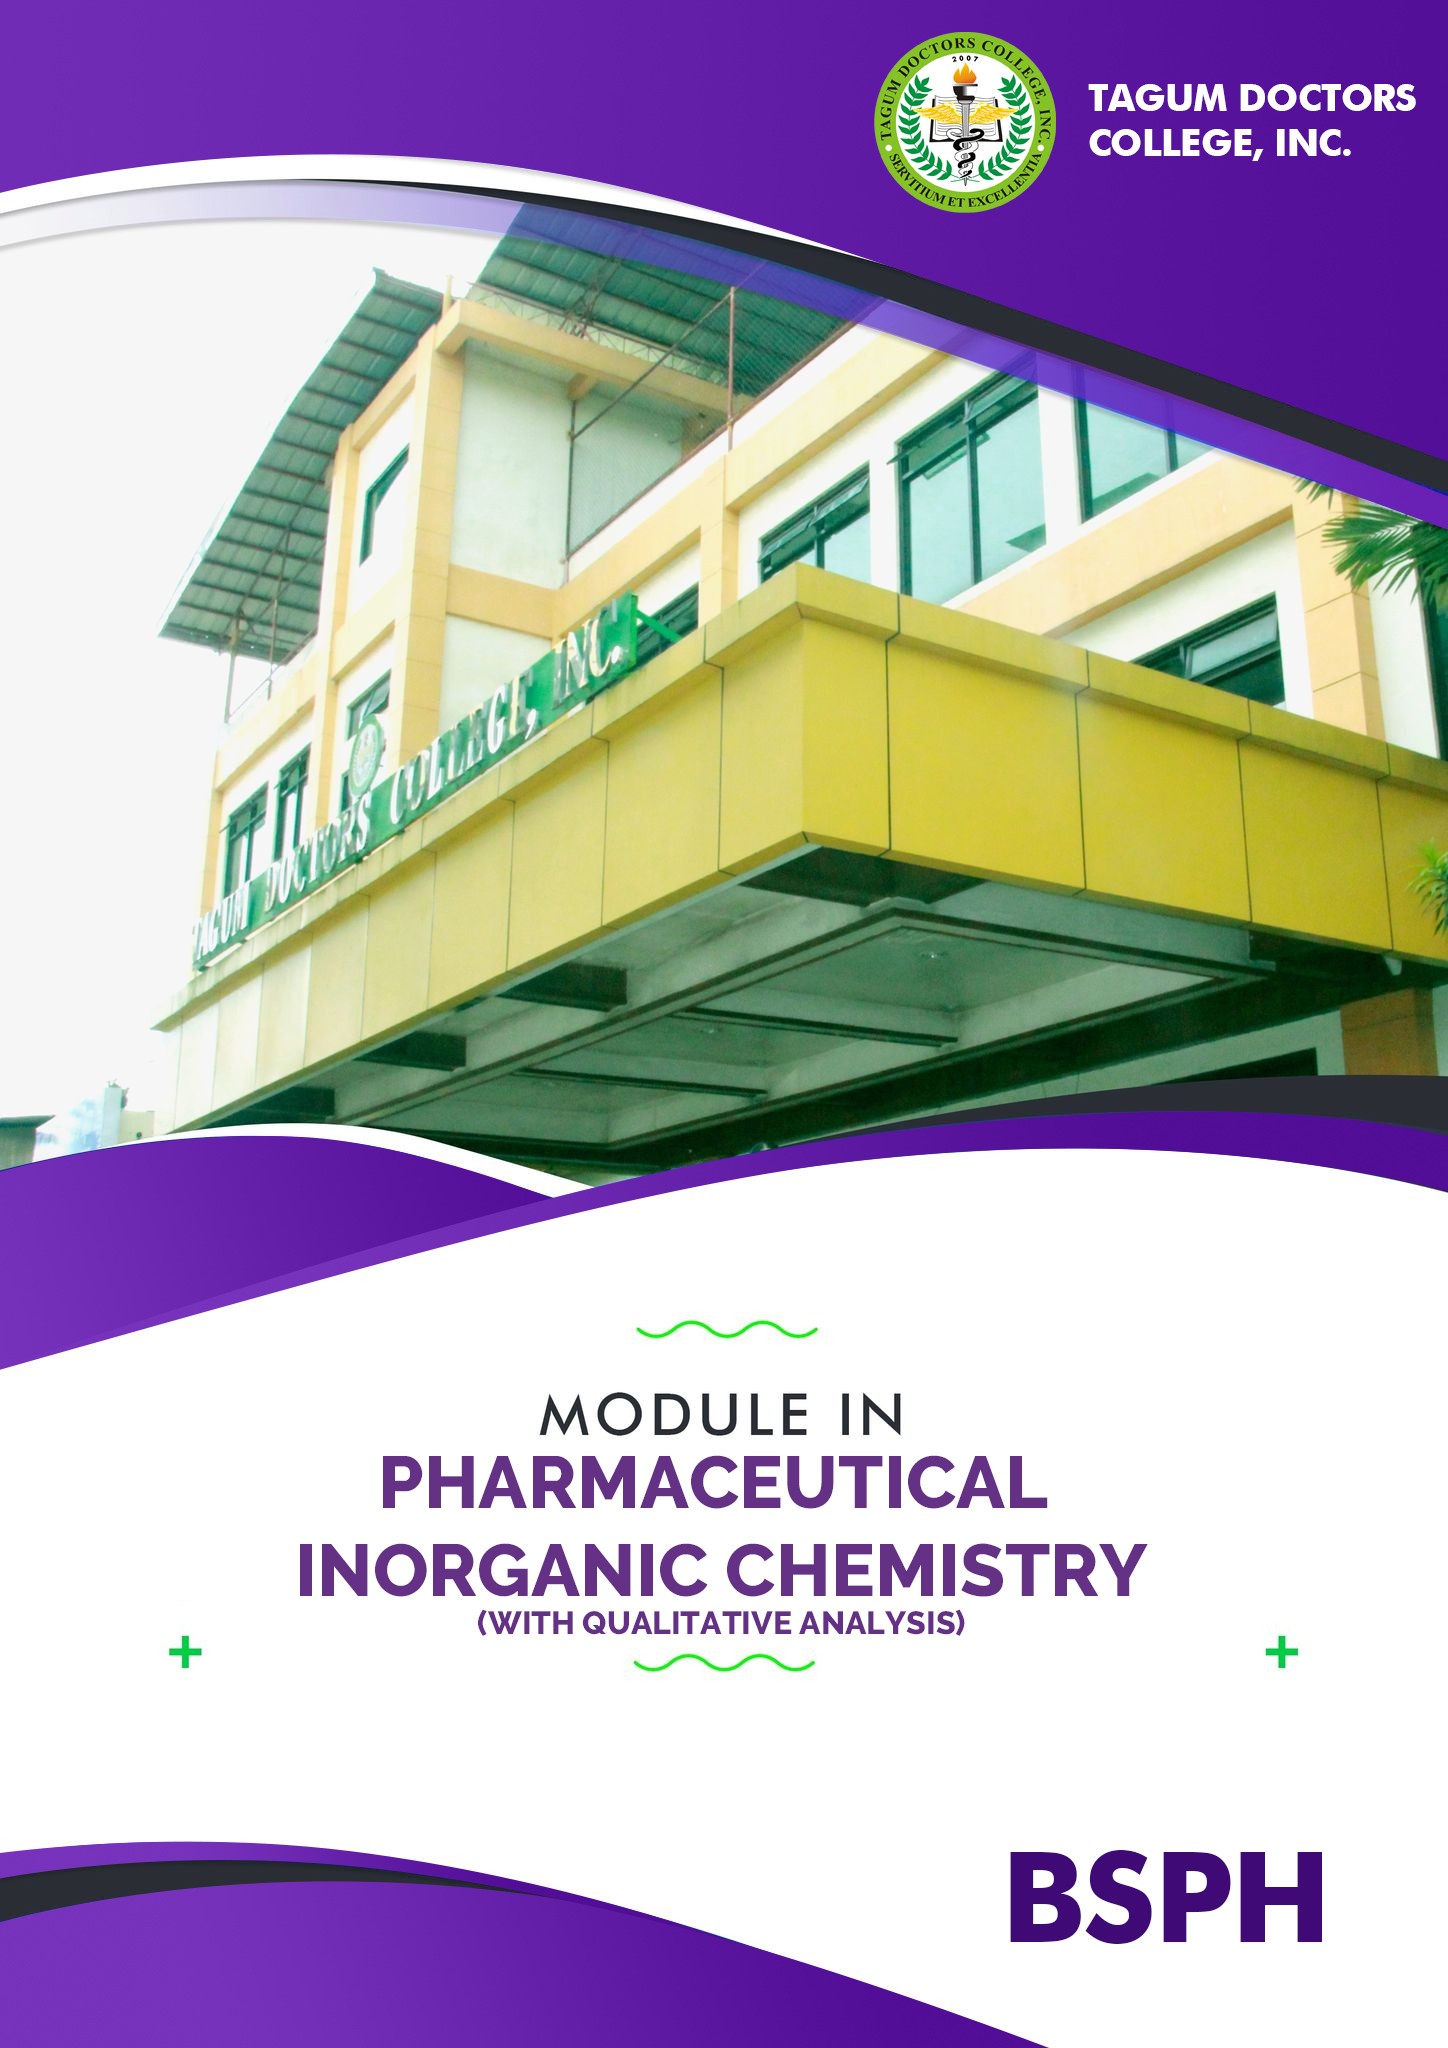 Pharmaceutical Inorganic Chemistry (w/ Qualitative Analysis) - BSPh 1B